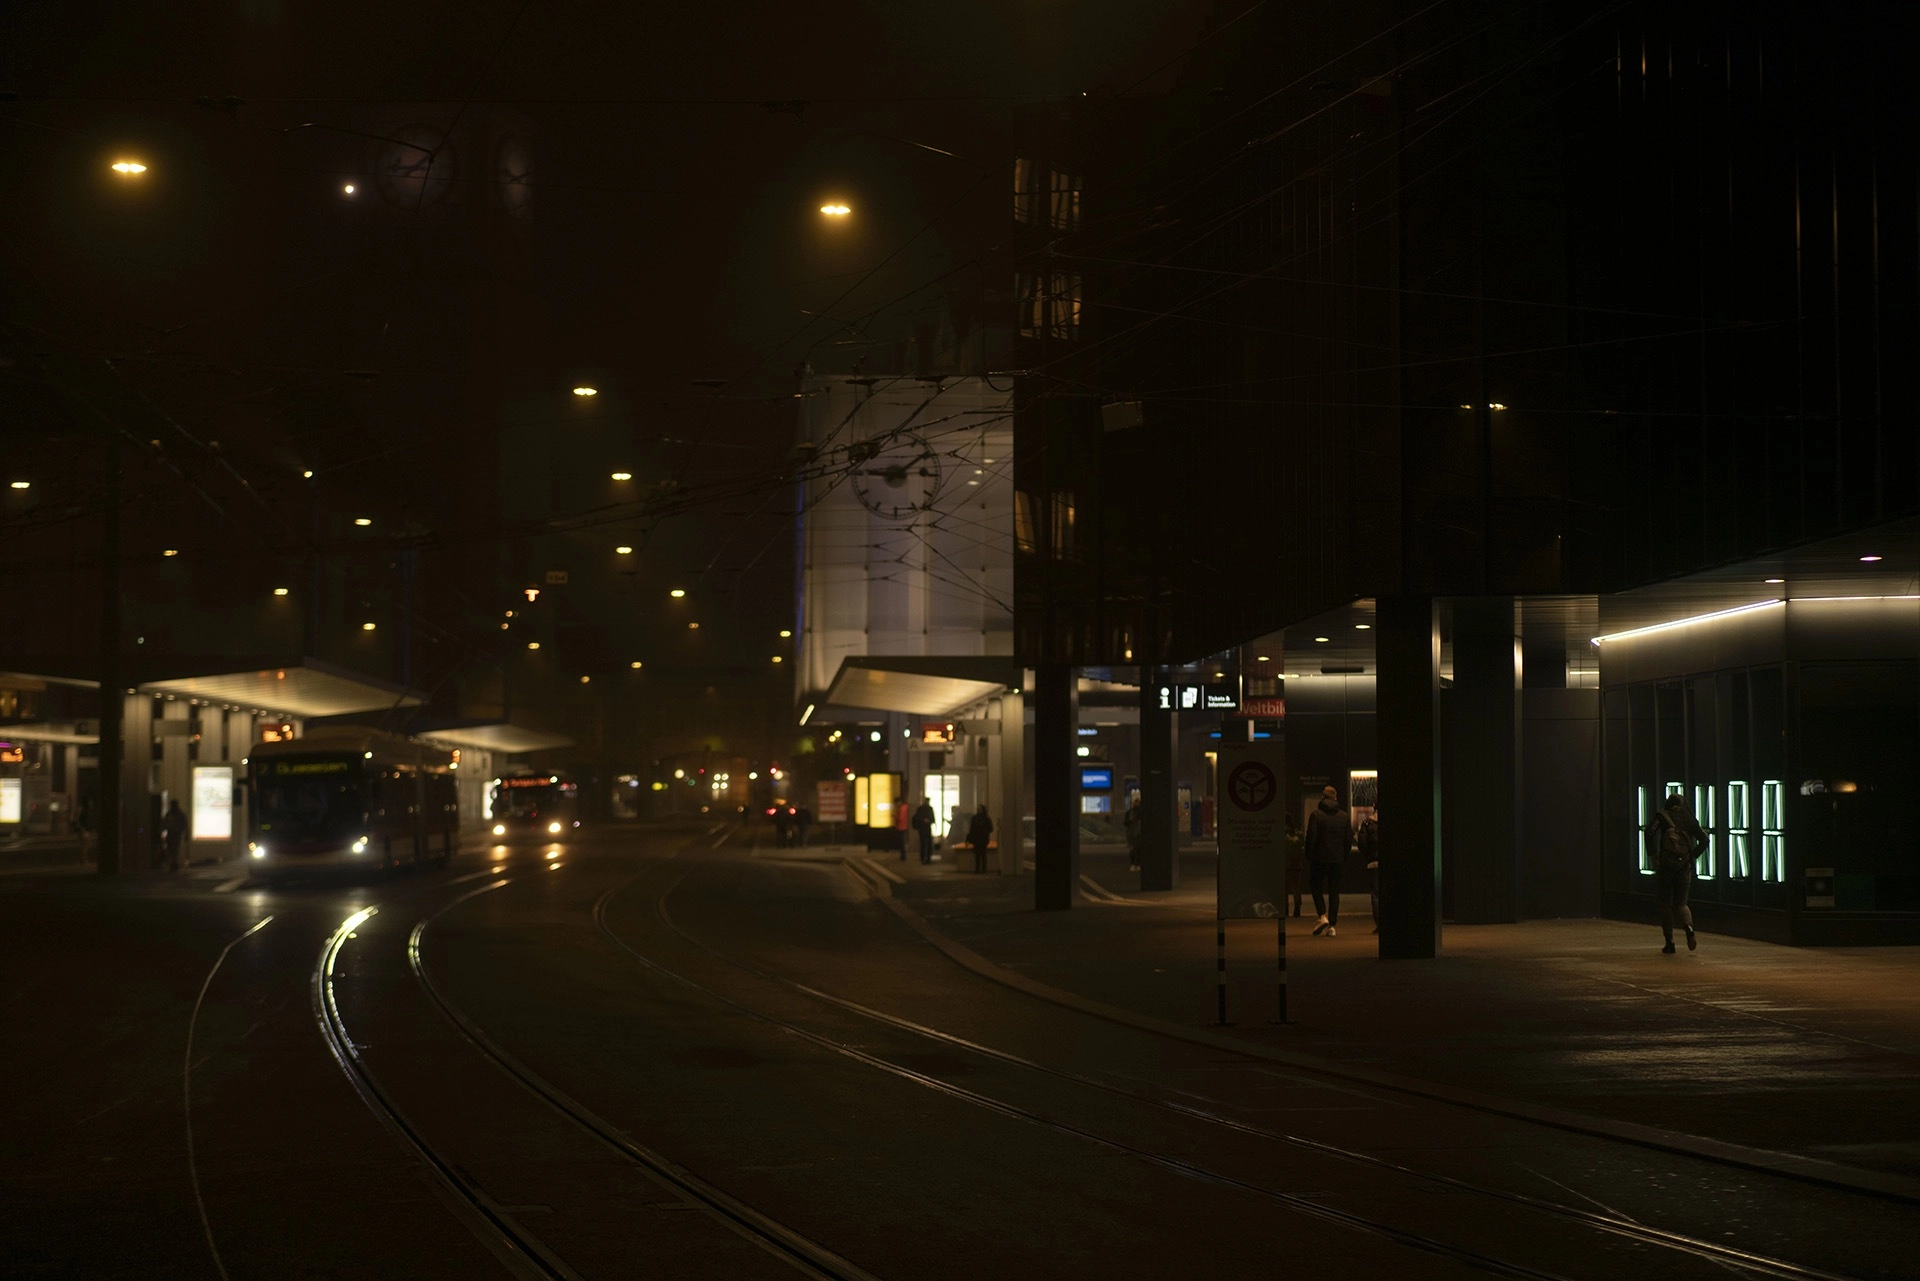 Nachtaufnahme der Umgebung des Bahnhof St. Gallen. Die Installation 5x14 leuchtet beim Rathaus und zeigt das Wort «LAURA».